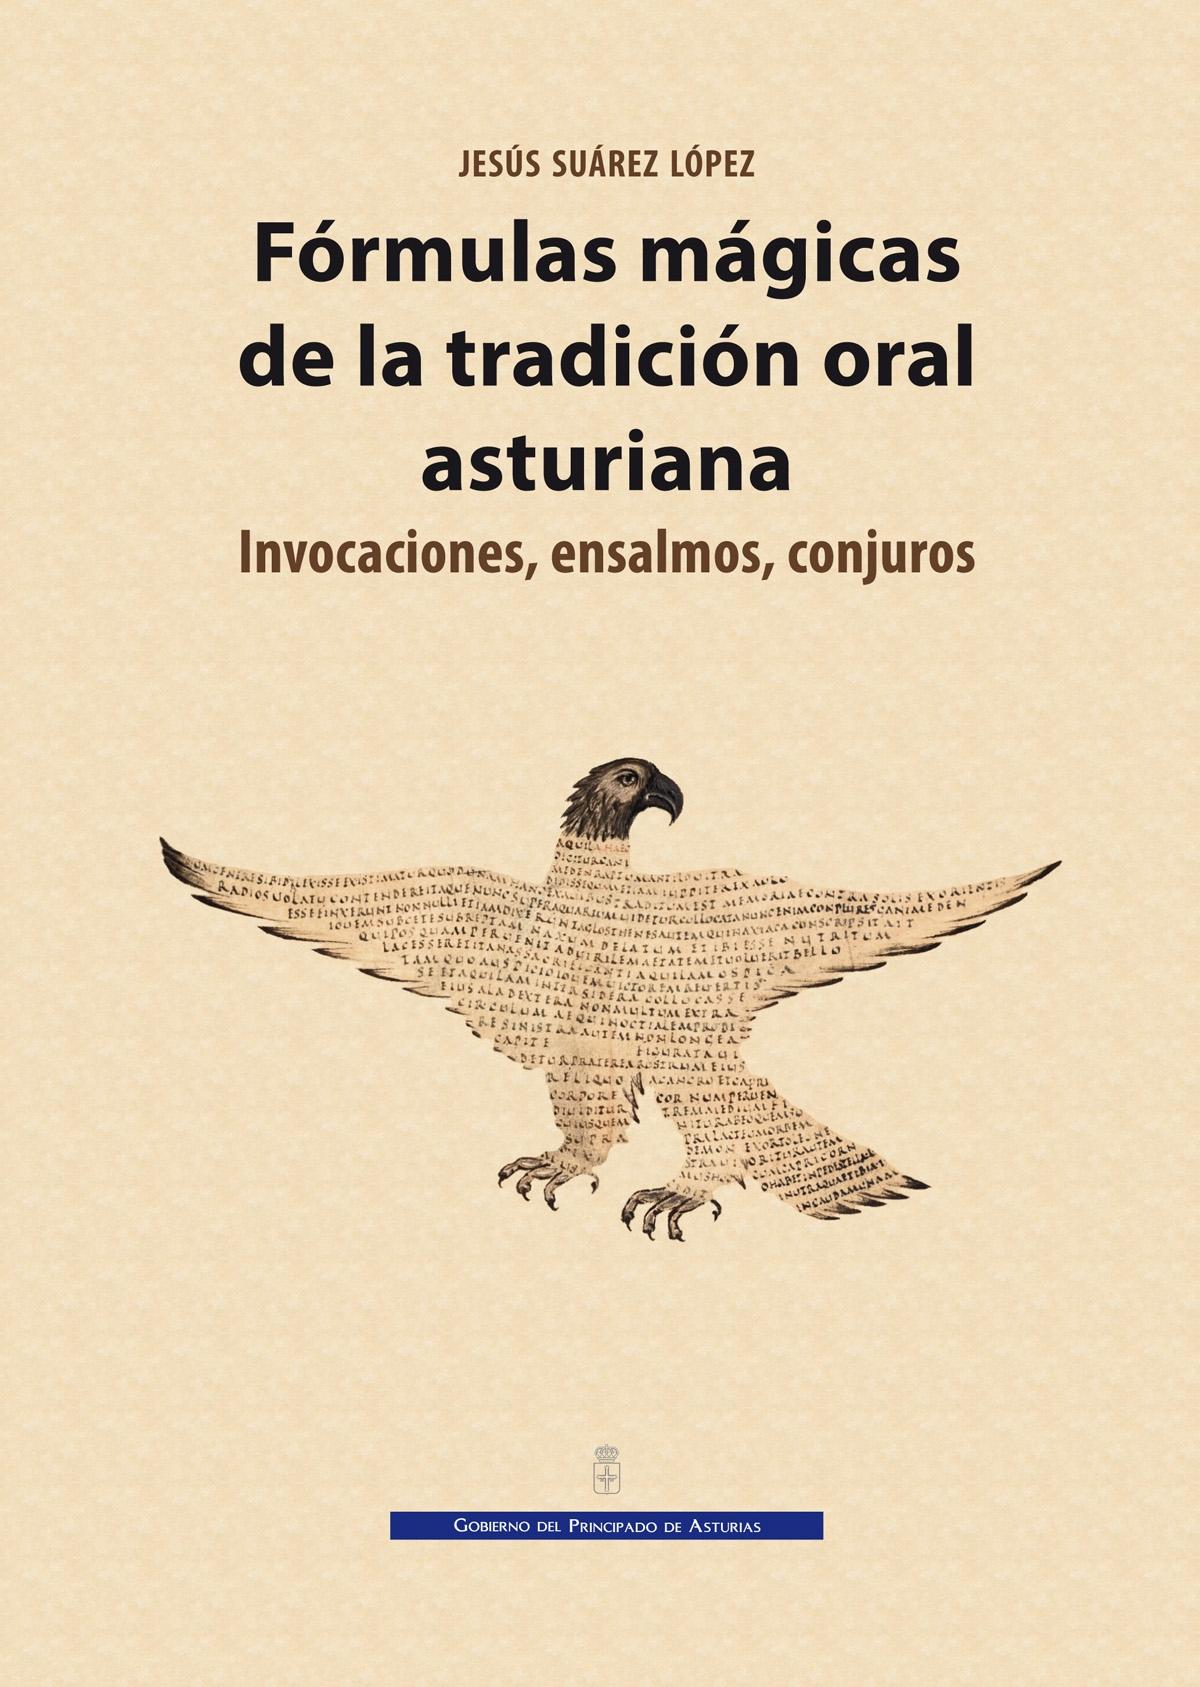 FORMULAS MAGICAS DE LA TRADICION ORAL ASTURIANA "Invocaciones, ensalmos, conjuros"